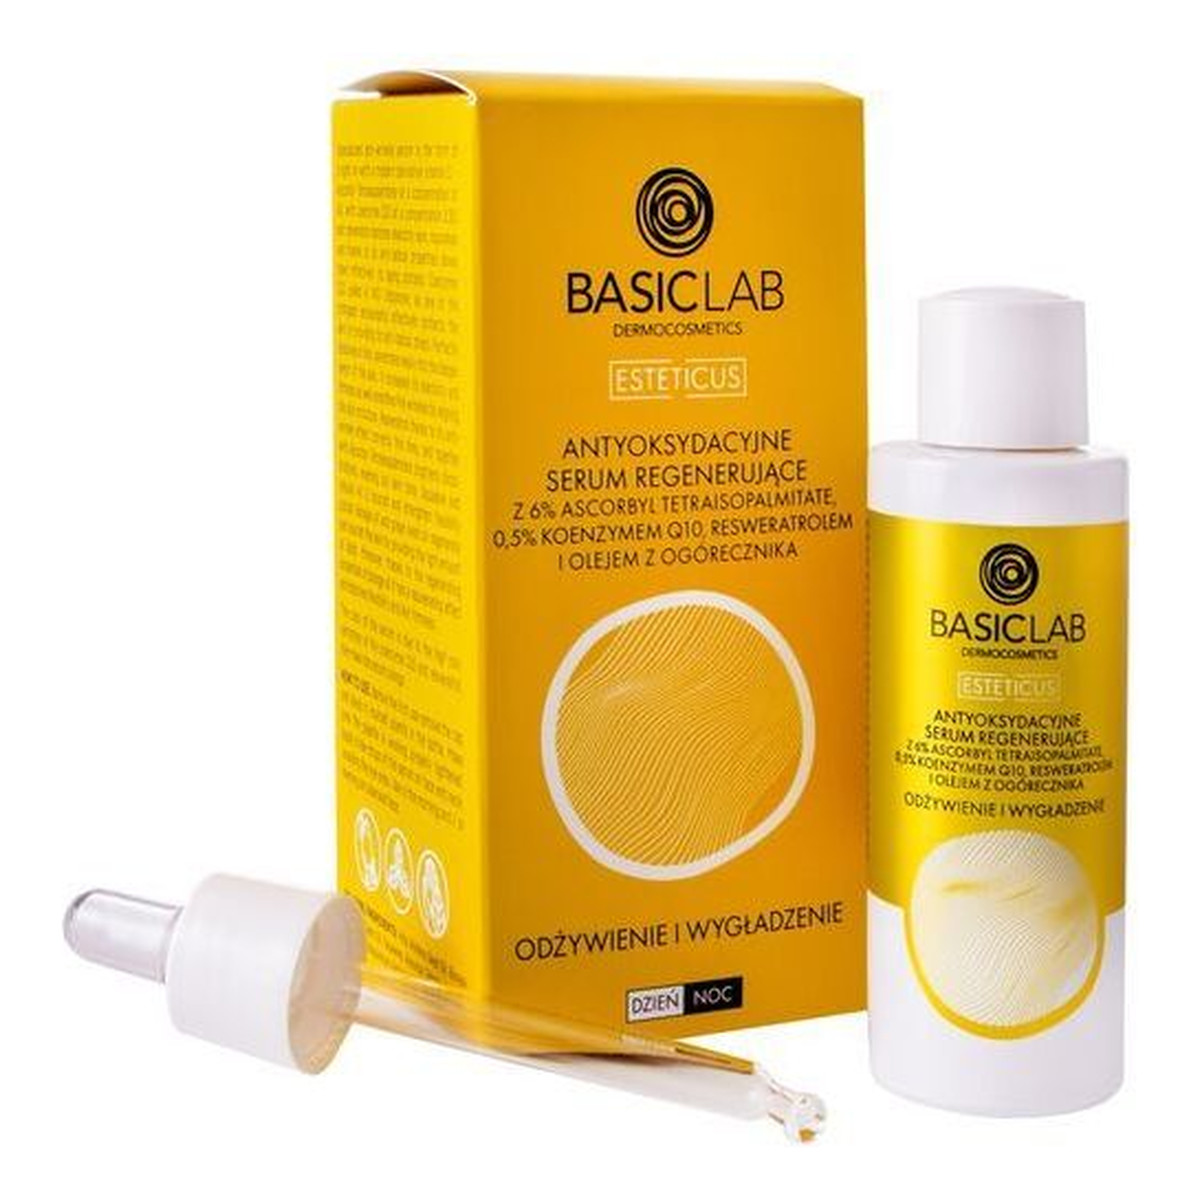 Basiclab Esteticus Antyoksydacyjne serum regenerujące 6% ascorbyl tetraisopalmitate 0.5% koenzymem Q10 i Olejem Z Ogórecznika 30ml